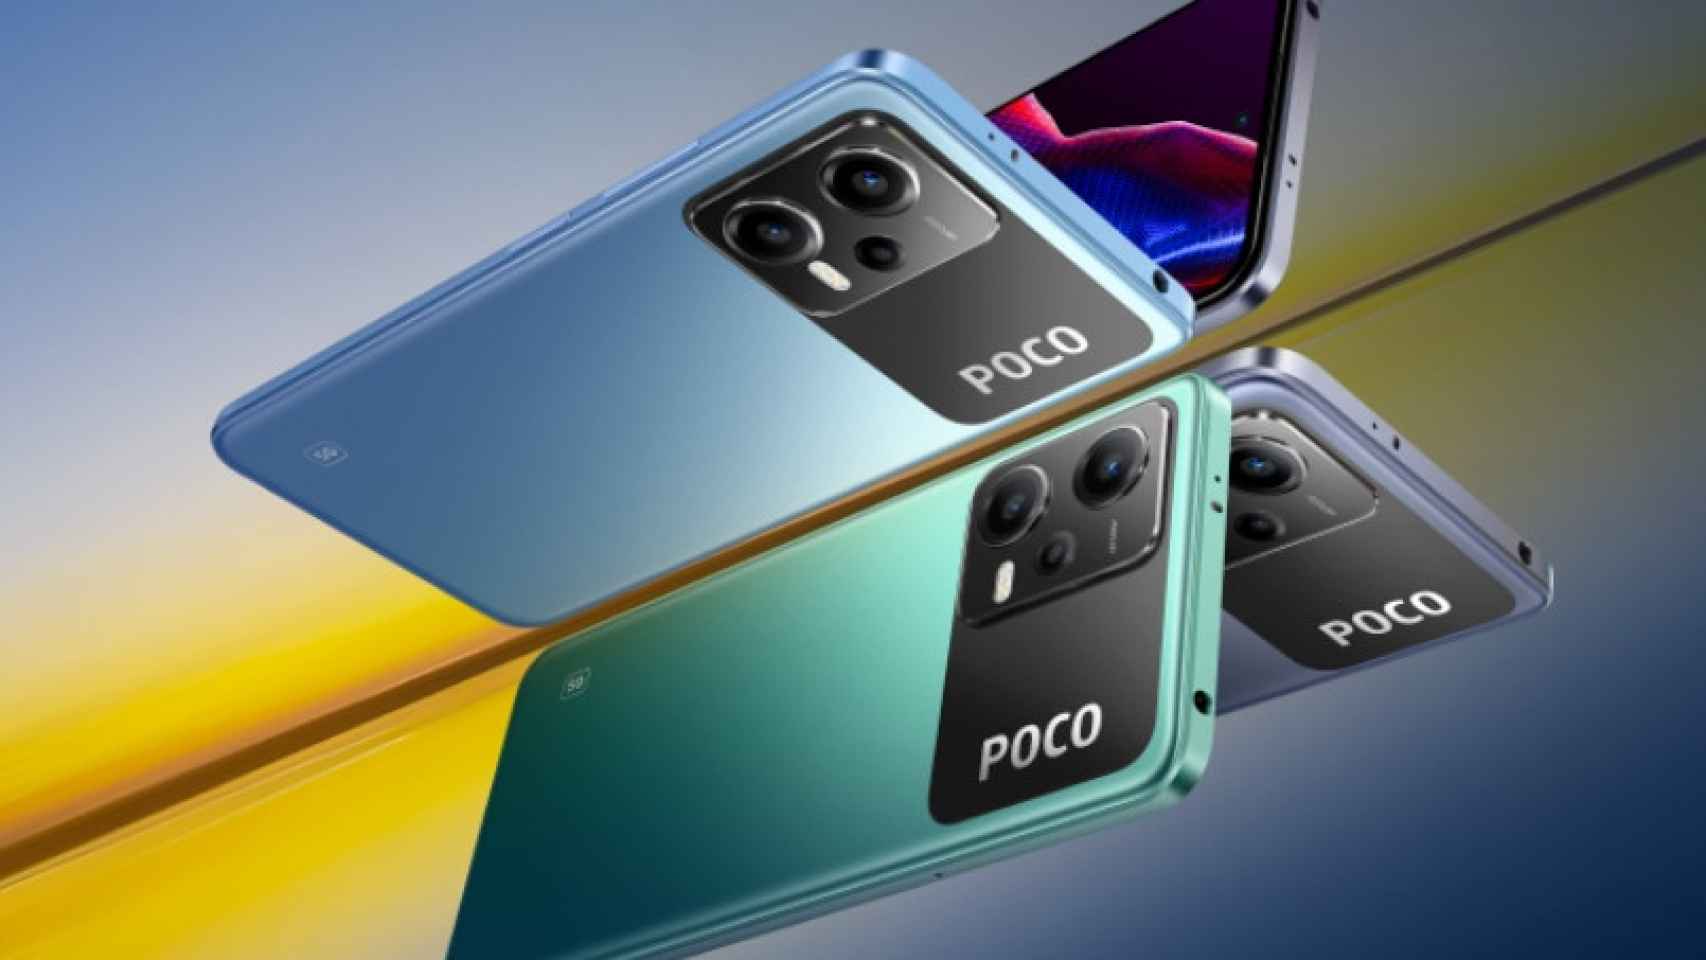 El nuevo POCO X5 Pro 5G de Xiaomi es un teléfono con gran pantalla